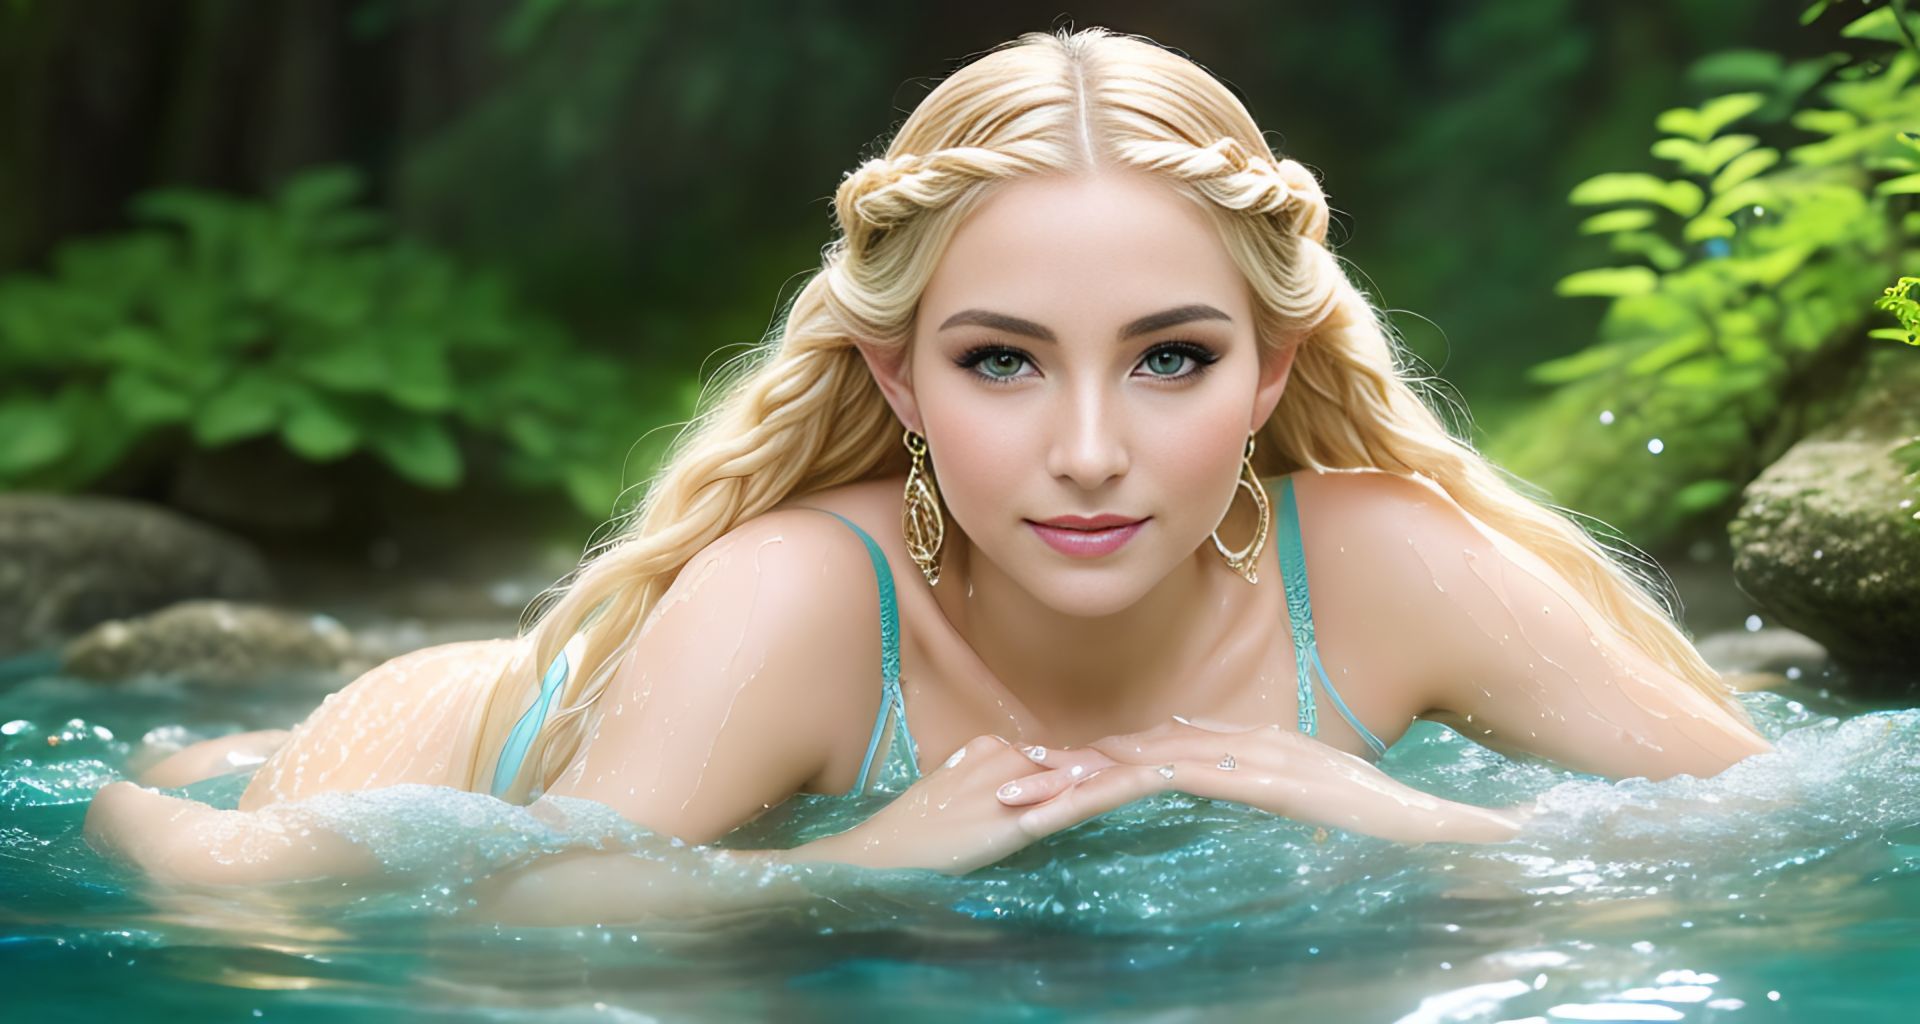 Sexy Women Elves Bathing - HD - Teaser #9